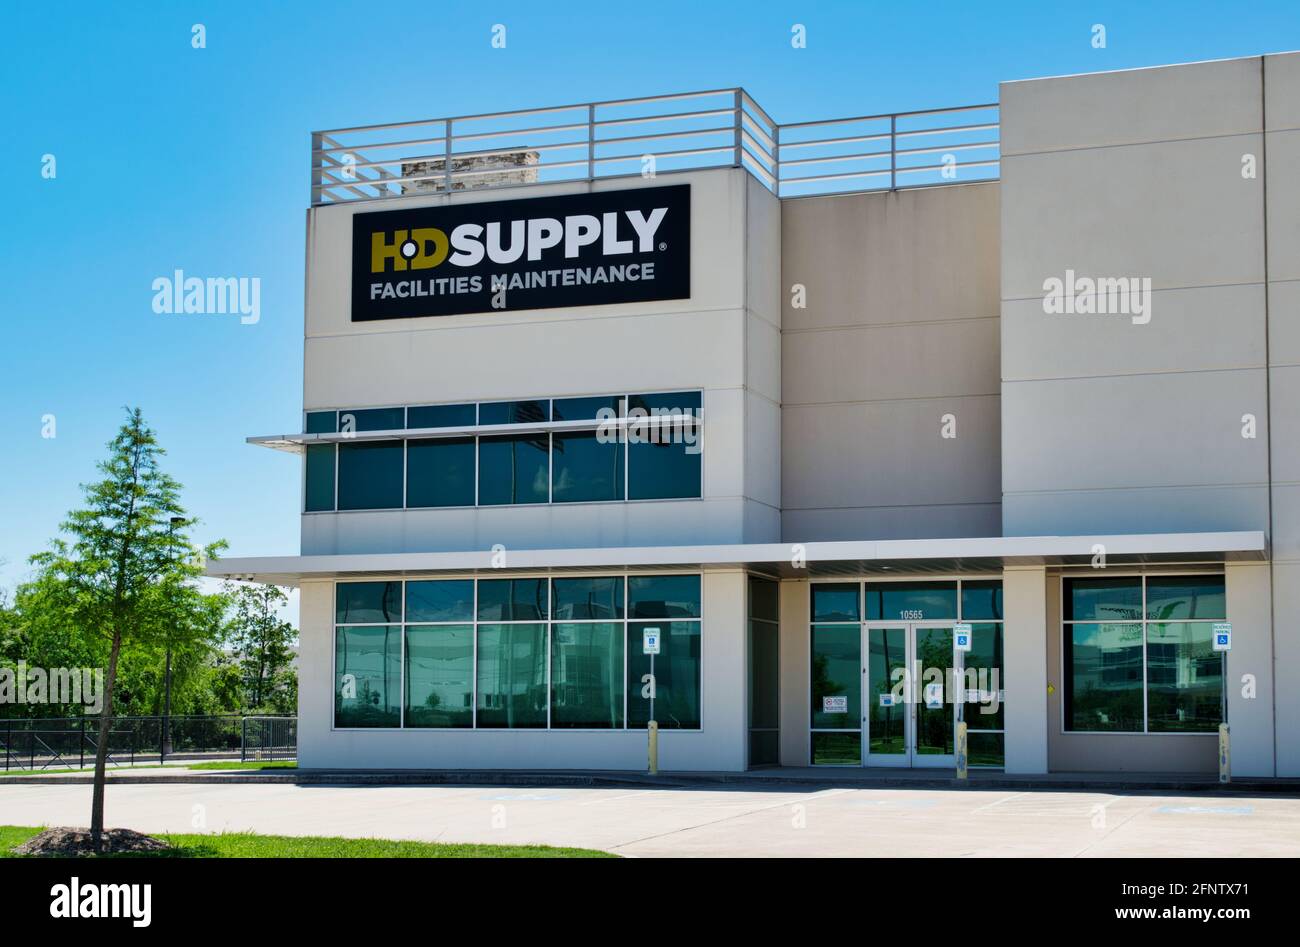 Houston, Texas USA 05-02-2021: Esterno dell'ufficio HD Supply a Houston, Texas. Distributore industriale di prodotti e servizi di manutenzione negli Stati Uniti. Foto Stock